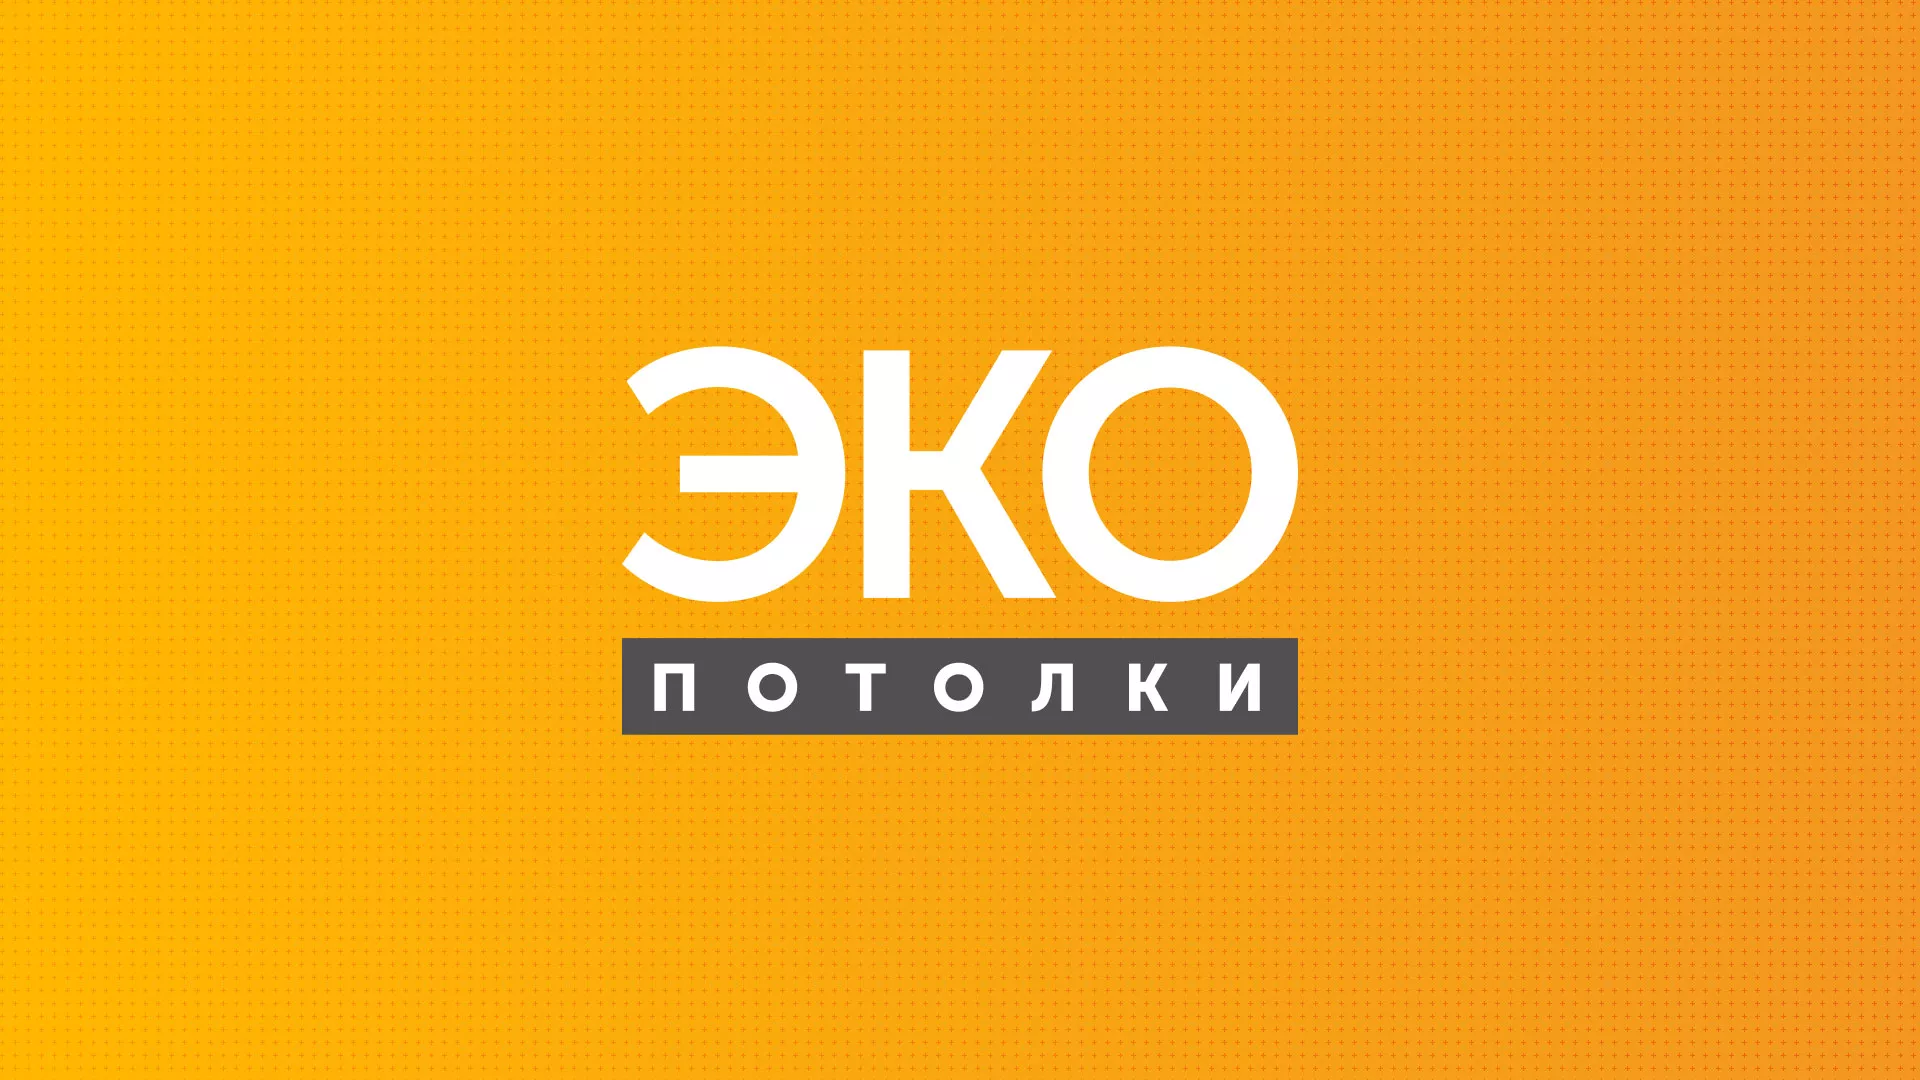 Разработка сайта по натяжным потолкам «Эко Потолки» в Первомайске